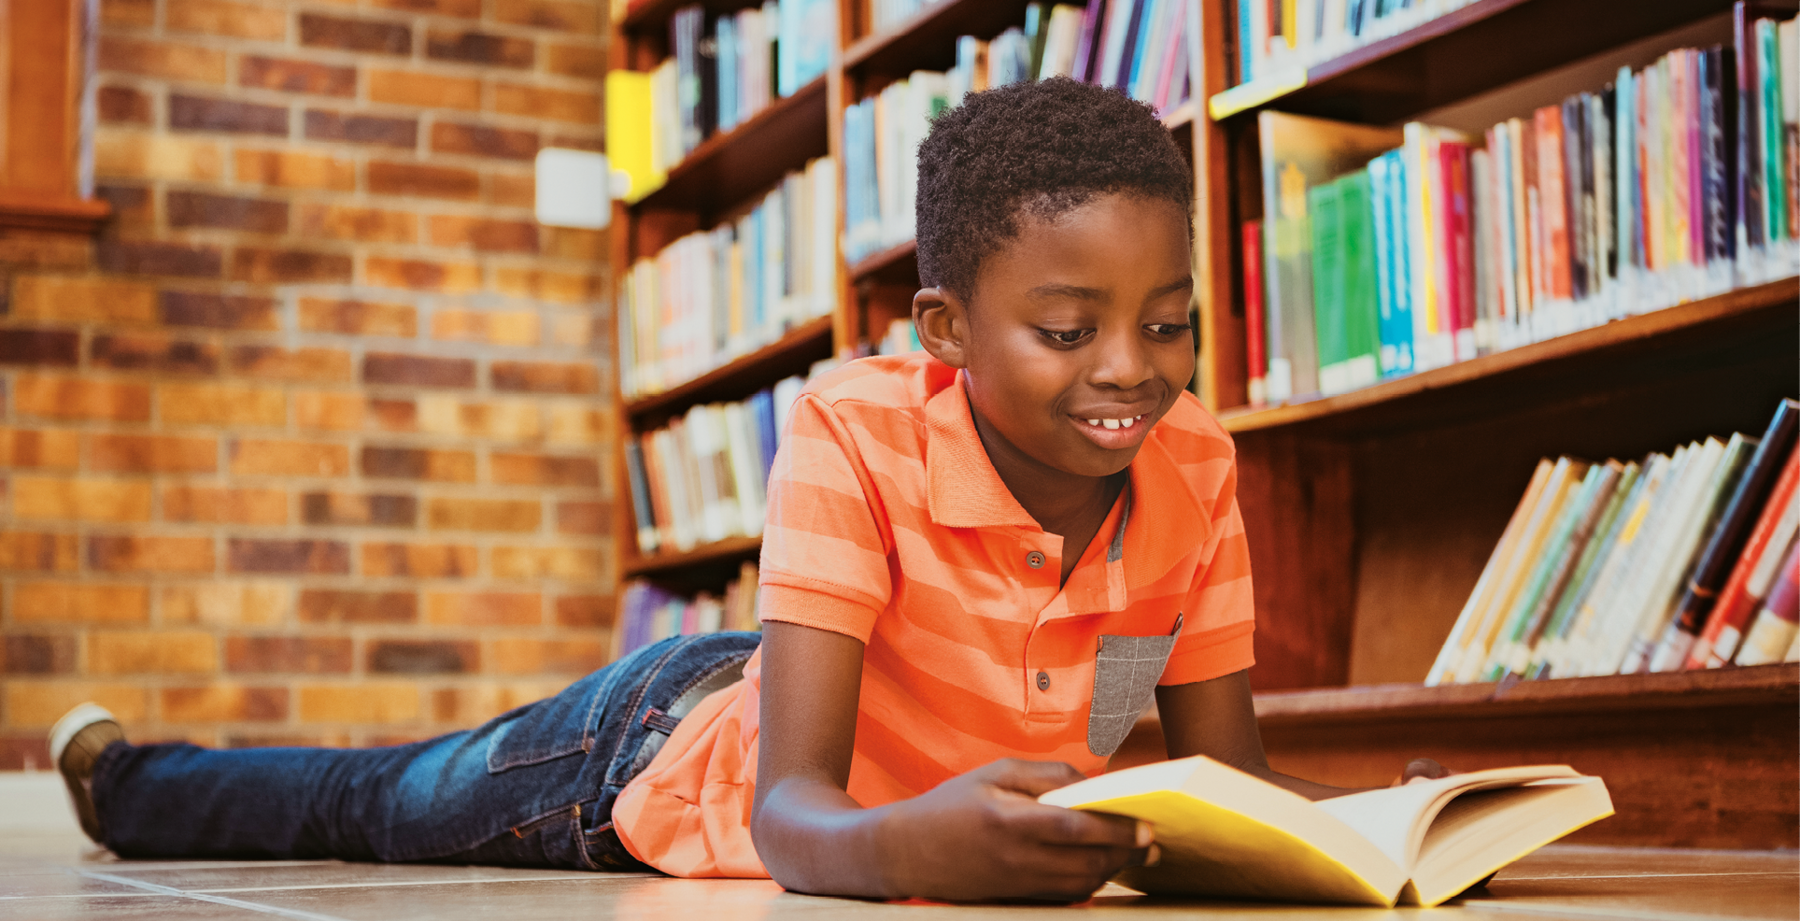 Fotografia. Um garoto negro deitado no chão de bruços, sorrindo e olhando para um livro aberto que está segurando. Ao fundo, prateleiras com livros dispostos lado a lado.